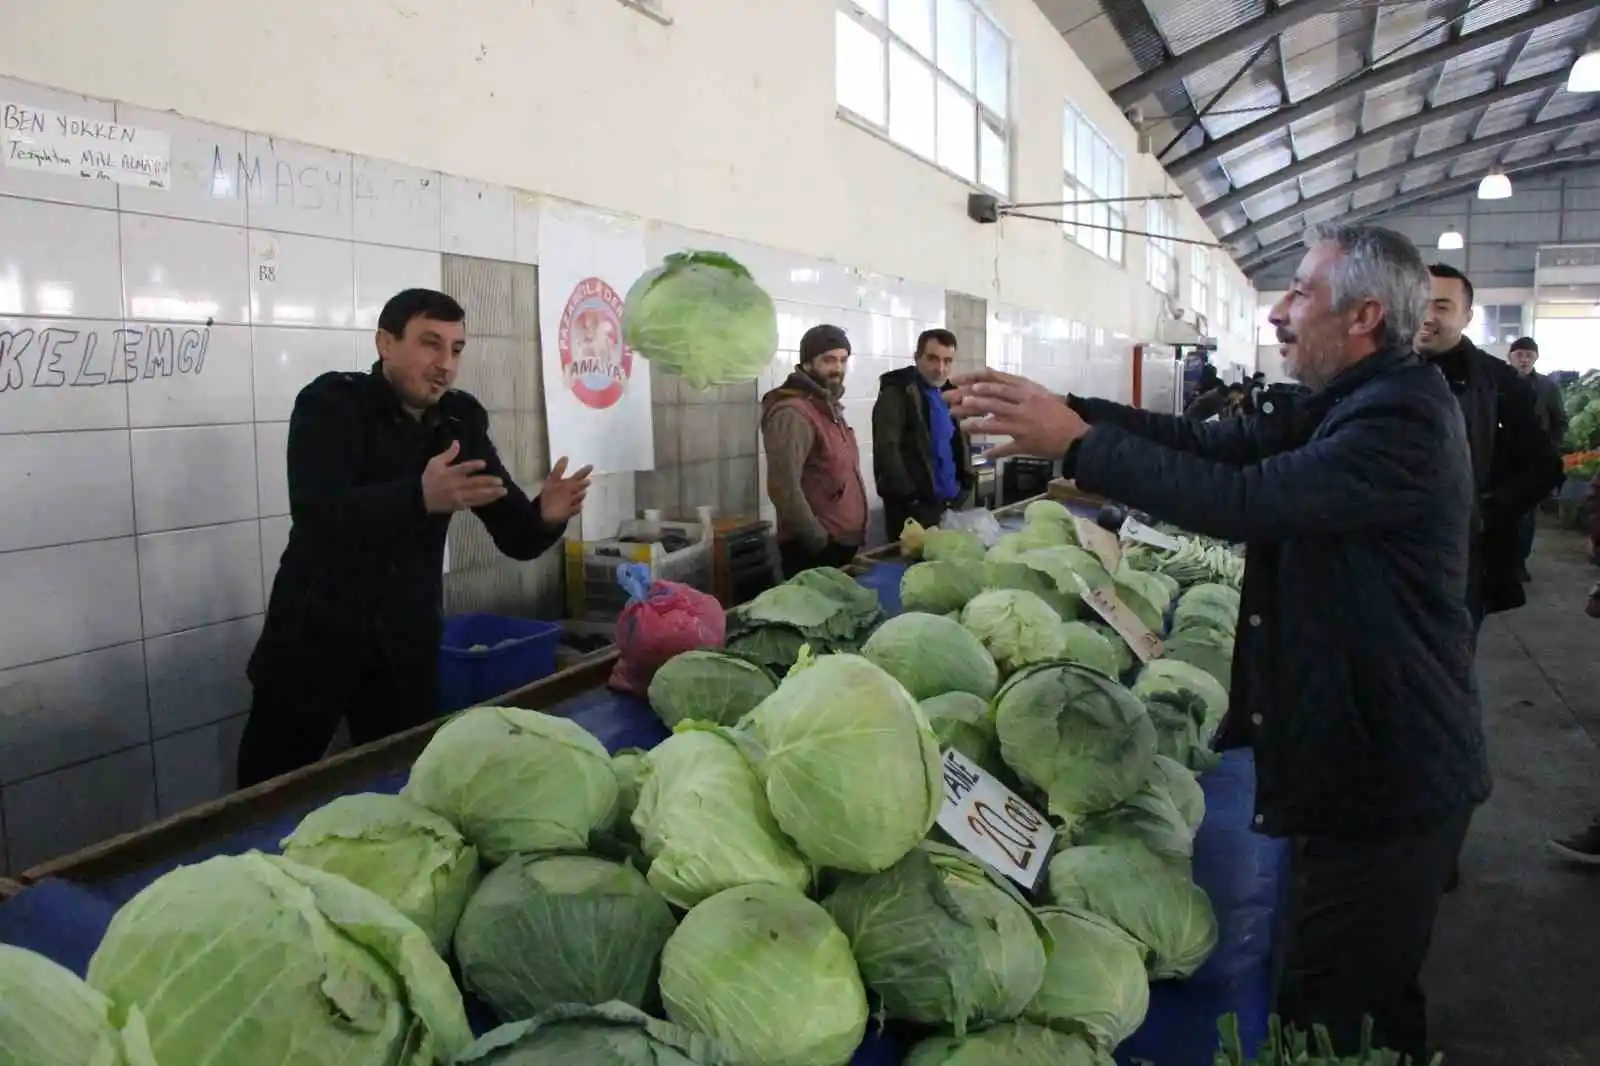 Amasyalı pazarcılardan depremzedeler için sebze-meyve kampanyası: “Acılar paylaştıkça azalacak”
